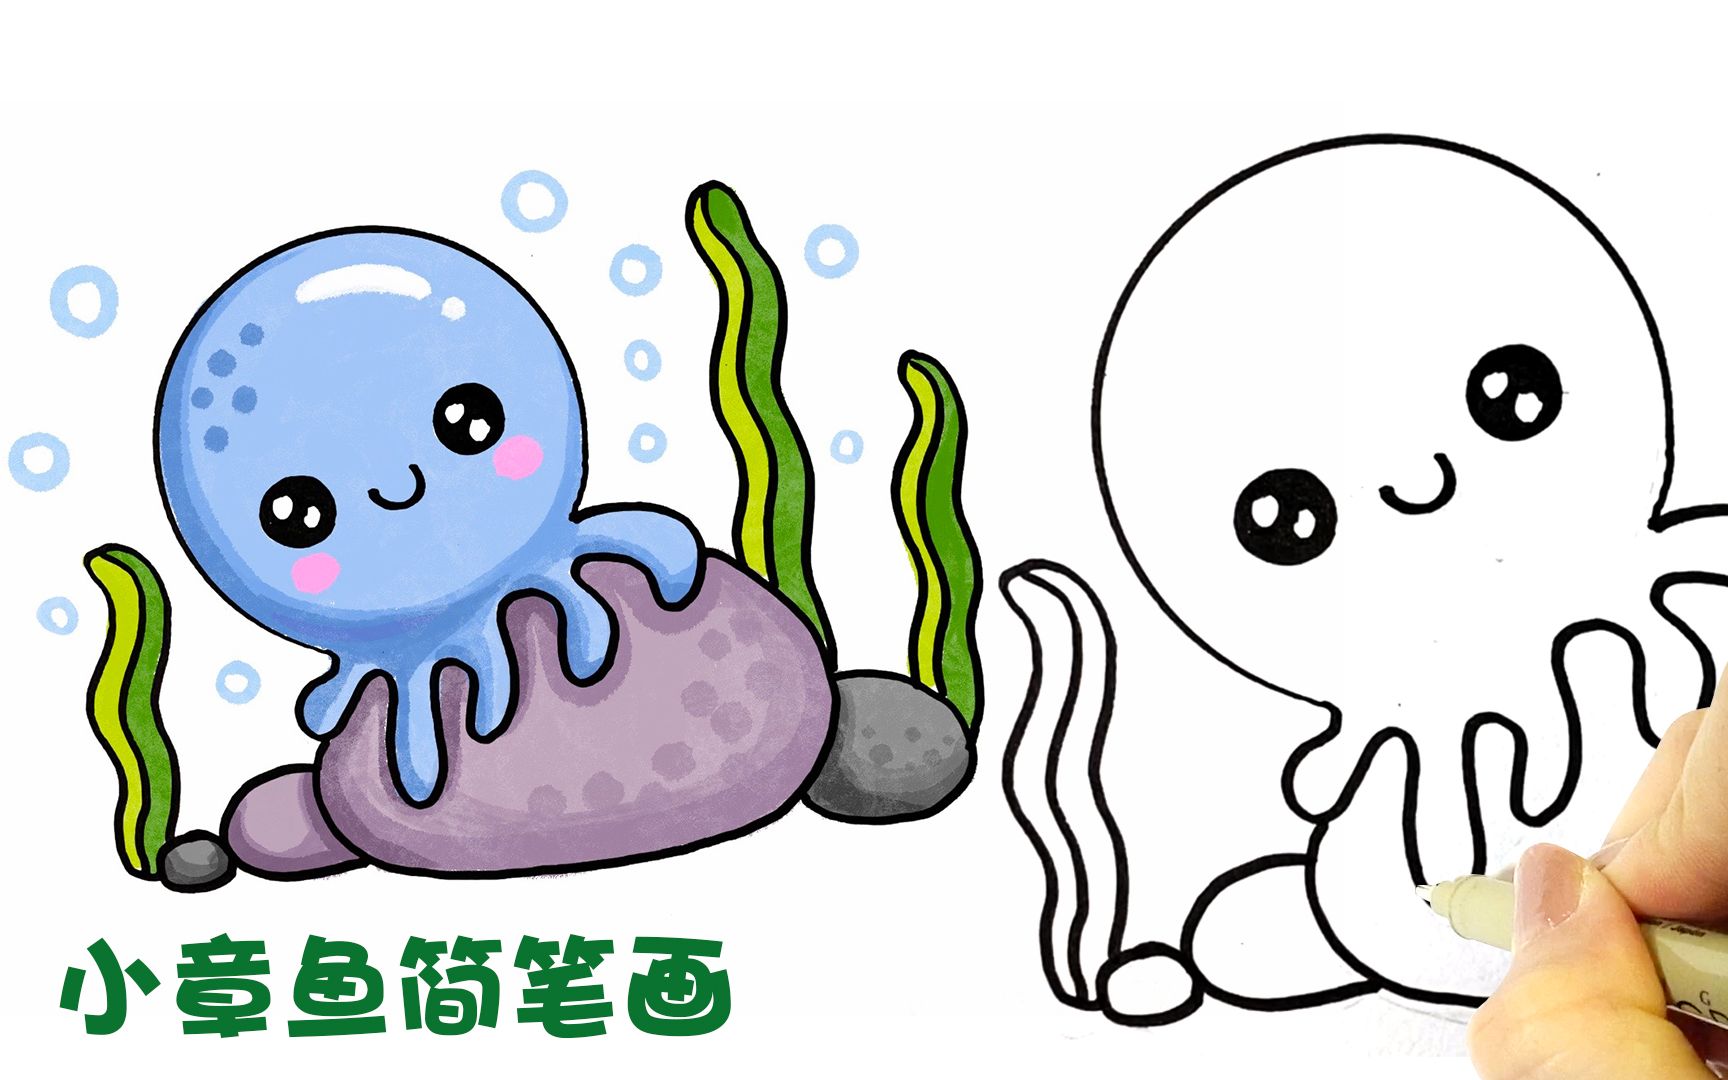 可爱又简单的小章鱼简笔画一起来画吧